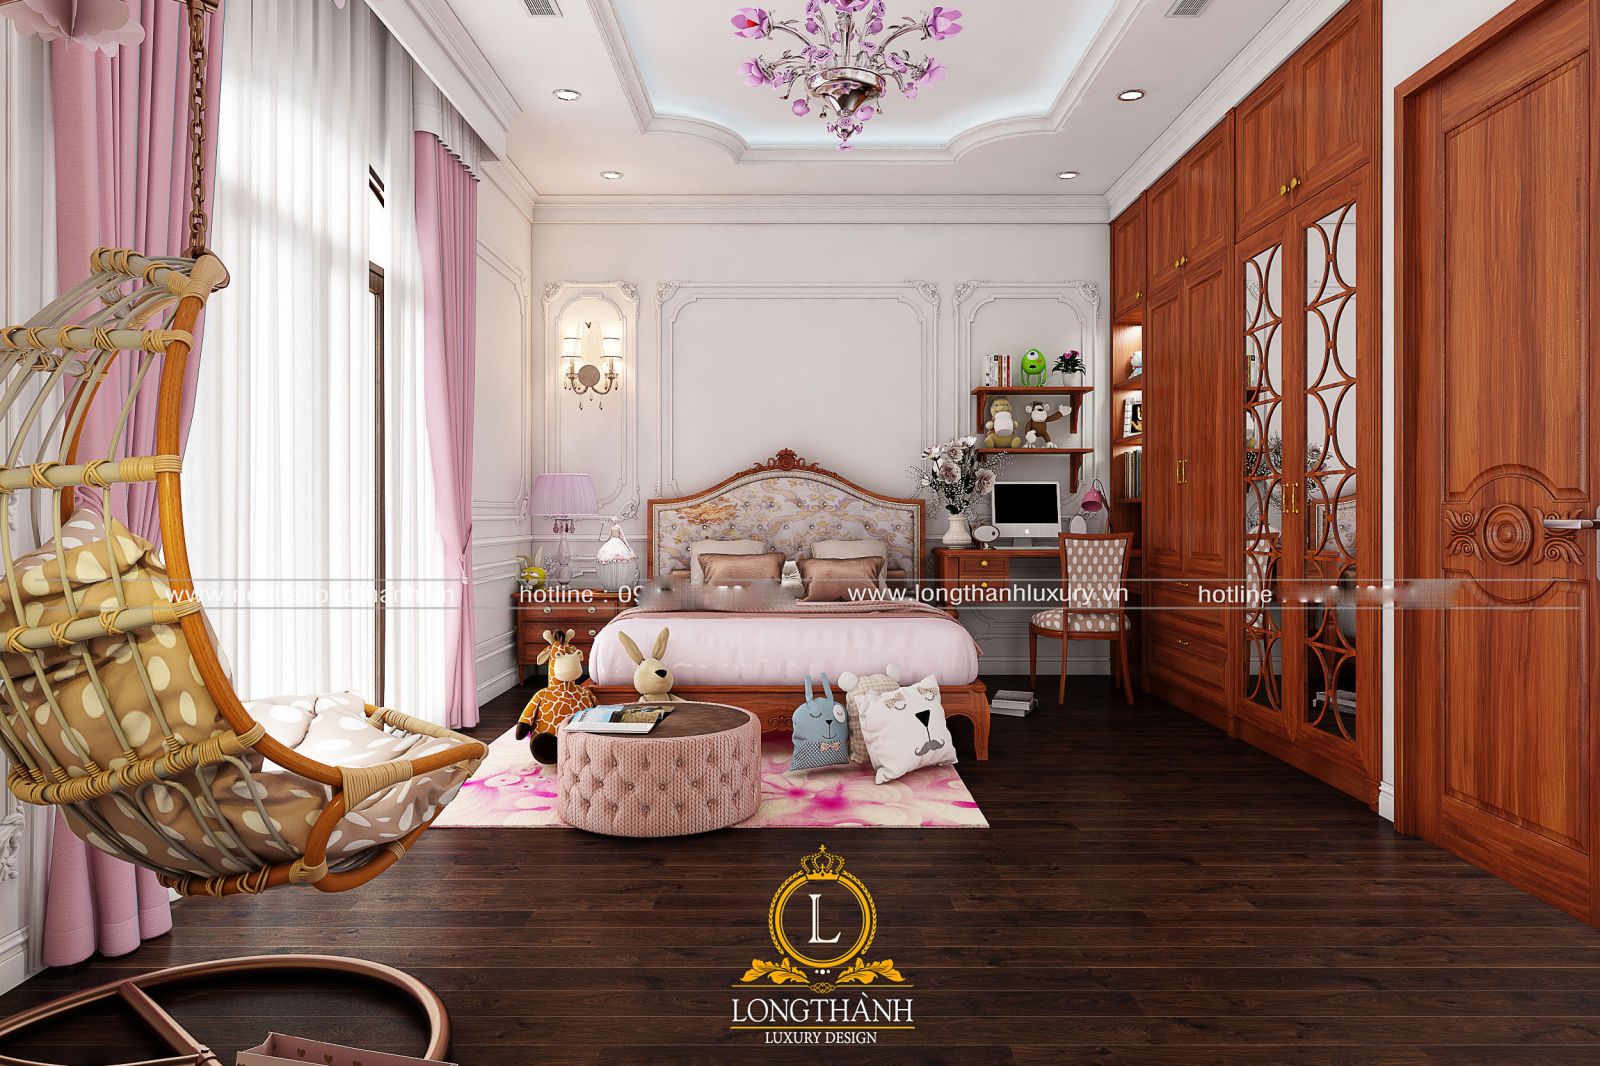 Thiết kế phòng ngủ master hiện đại theo phong cách Châu Âu sang trọng